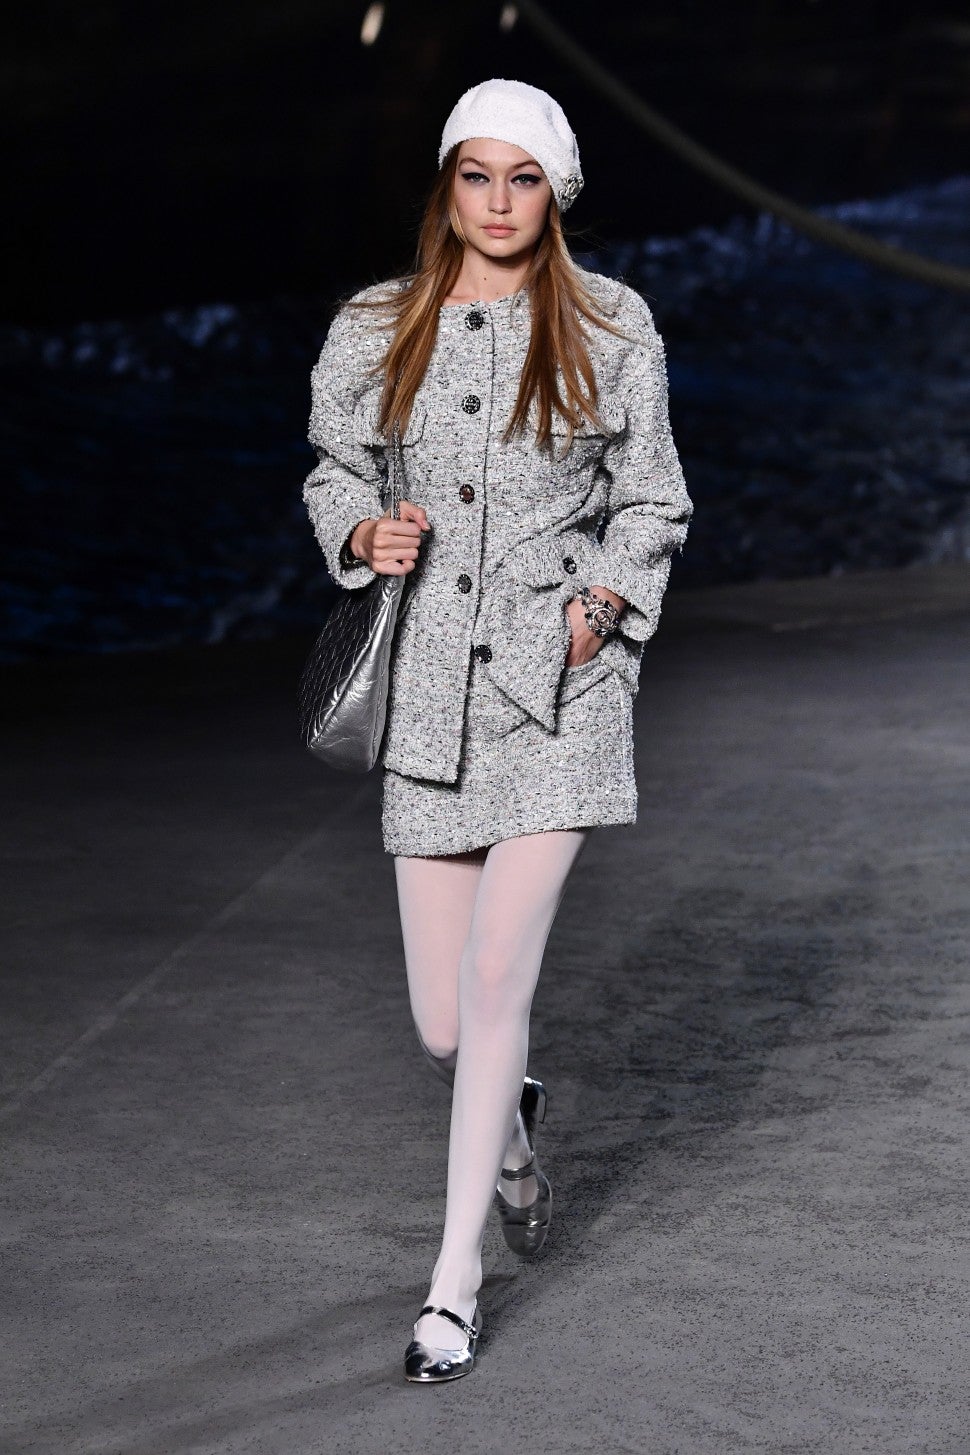 Gigi Hadid  Kaia Gerber On Chanel Runway At Paris Fashion Week  Pics   Hollywood Life